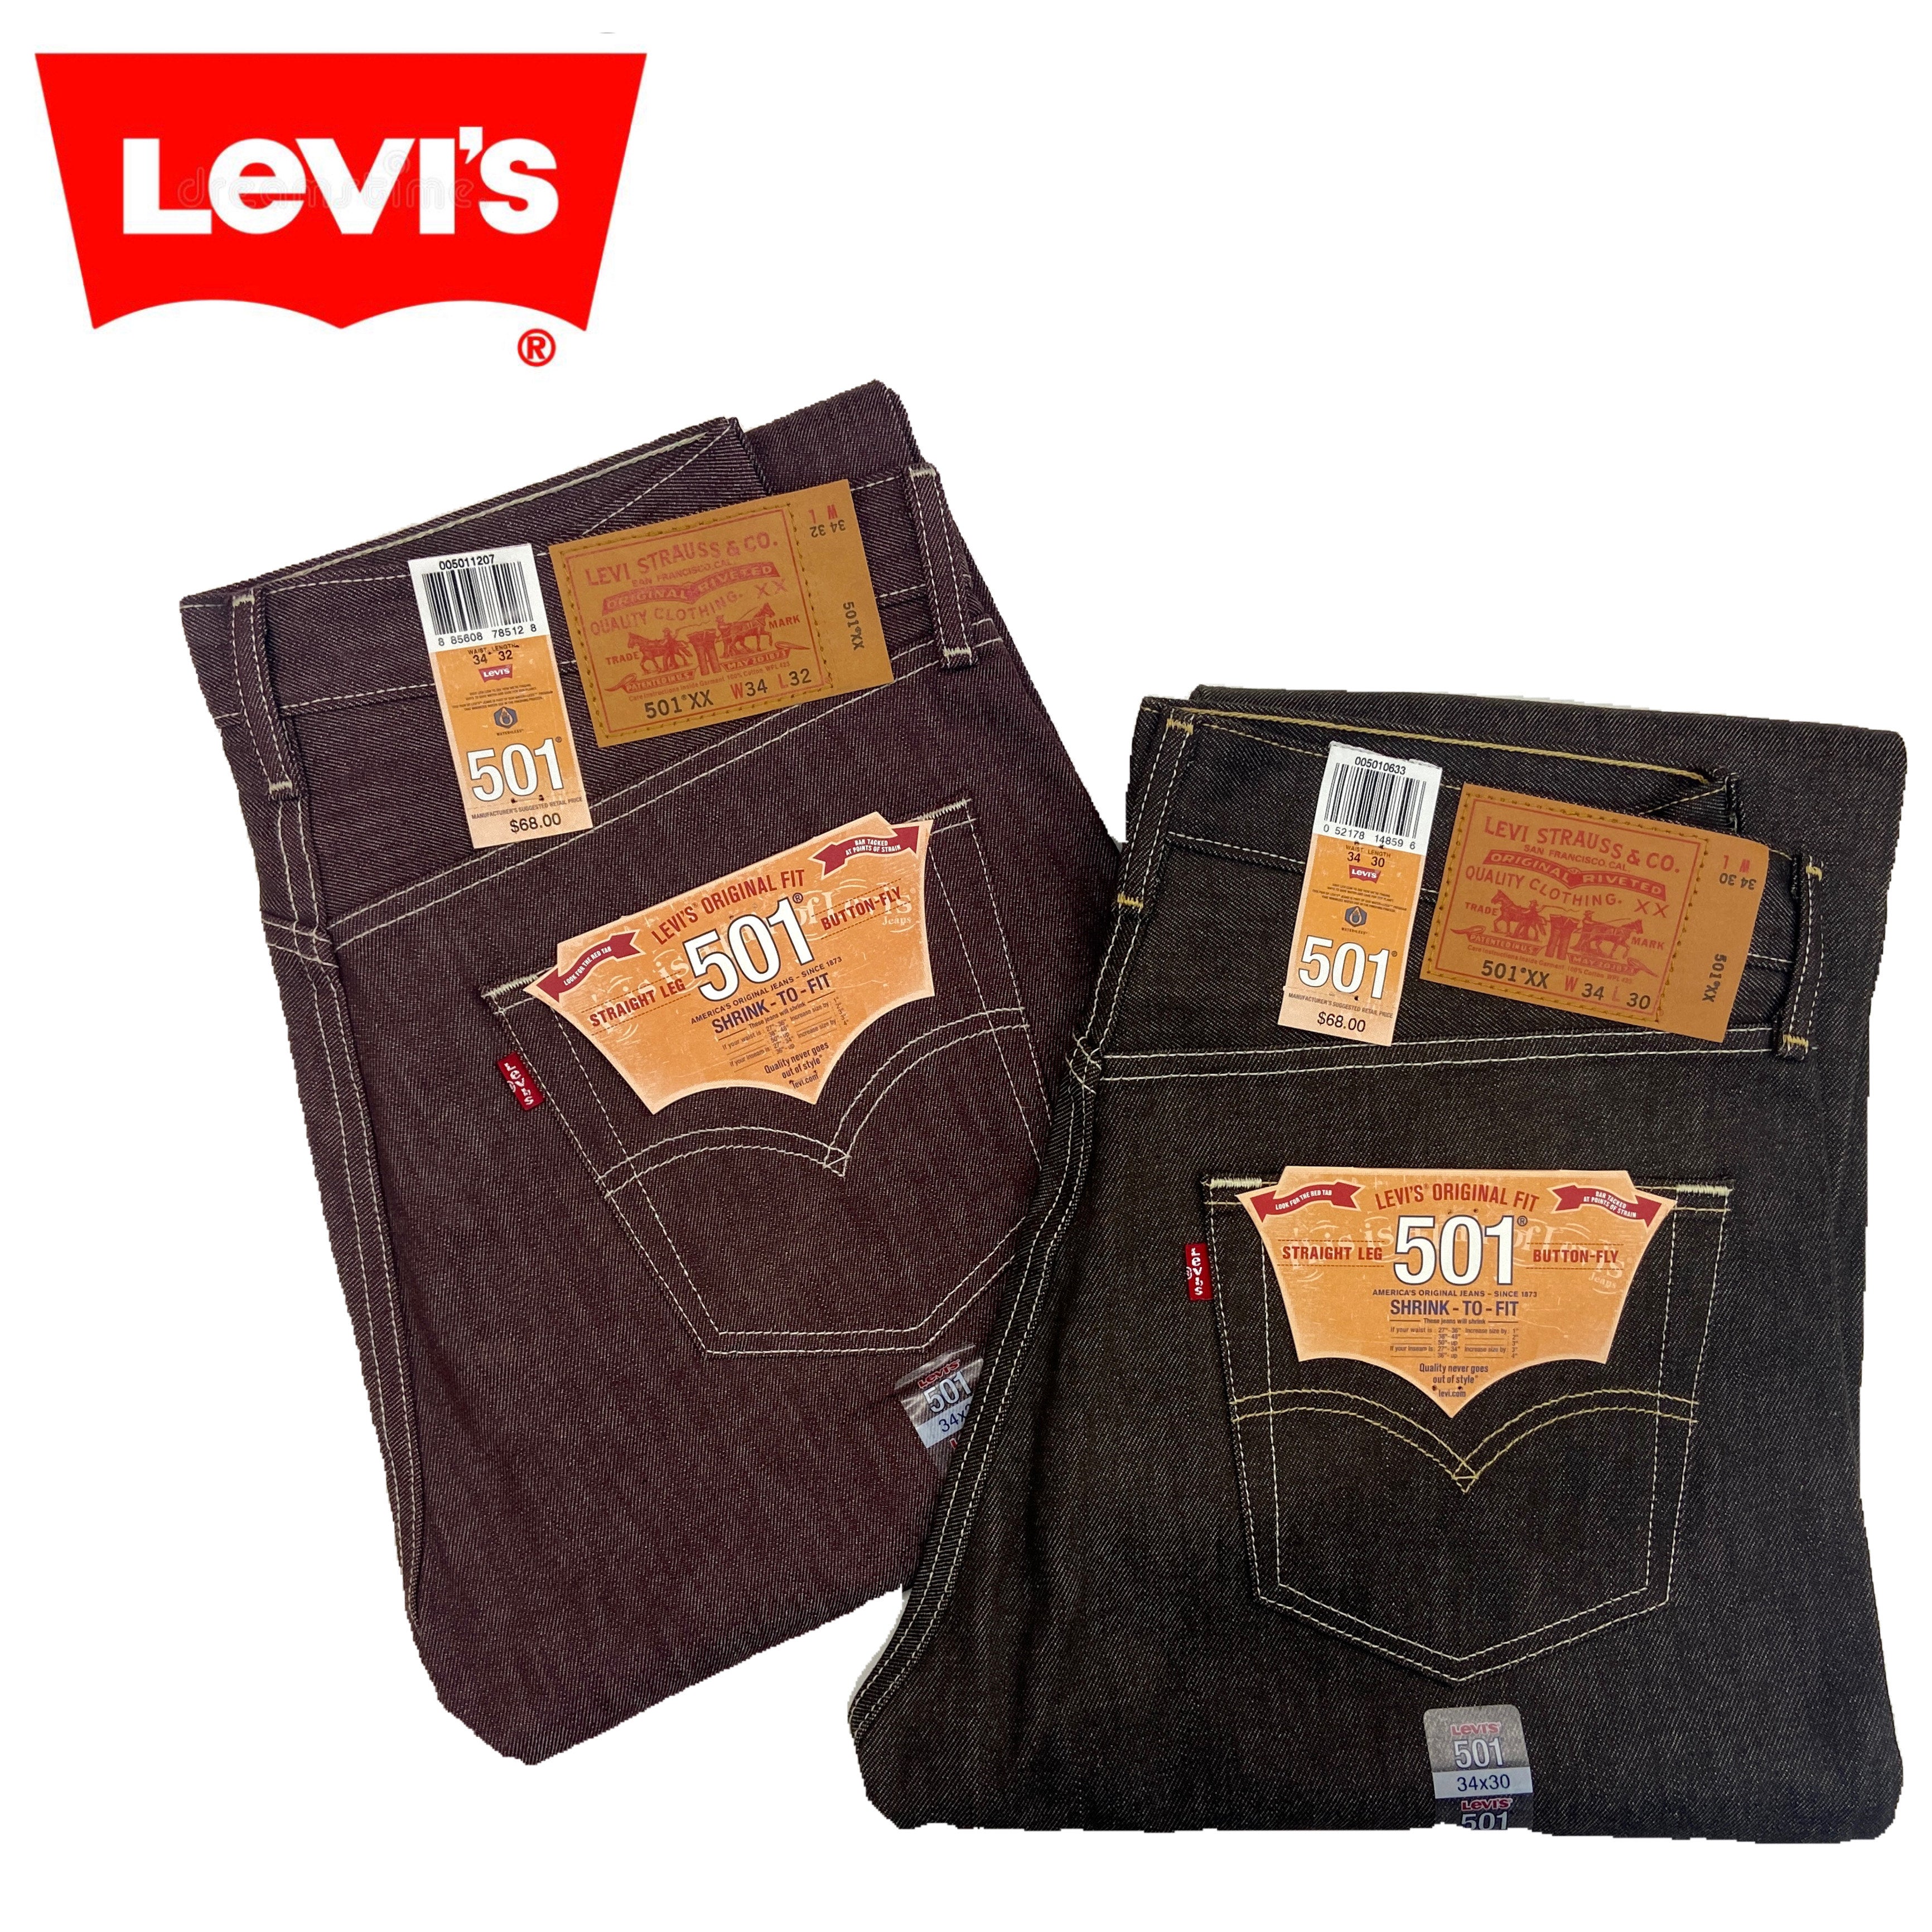 Levi's 501 Size 30 - 44